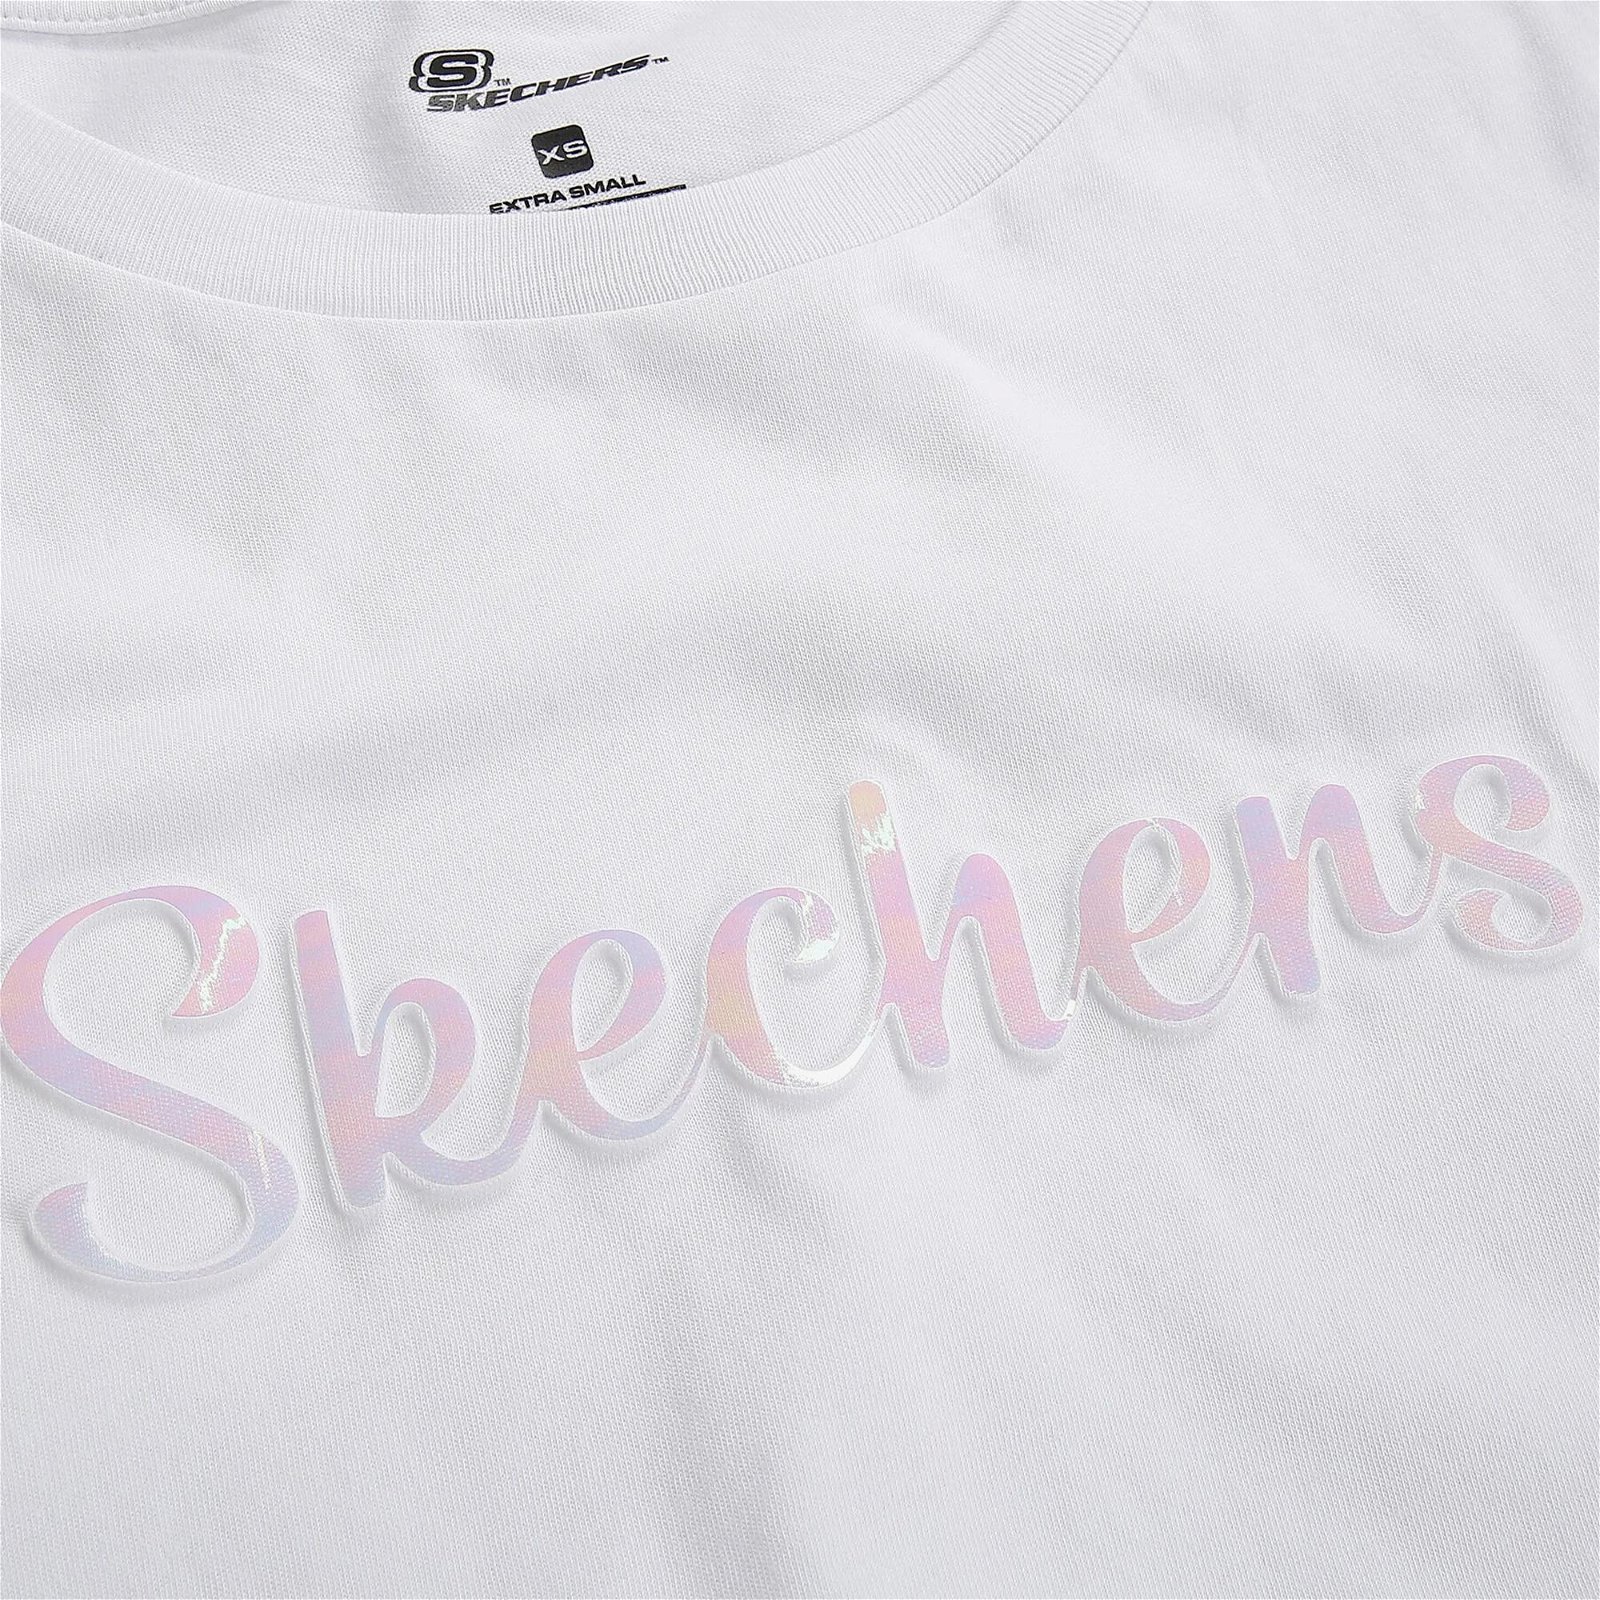 Skechers Graphic Crew Neck Kadın Beyaz T-Shirt